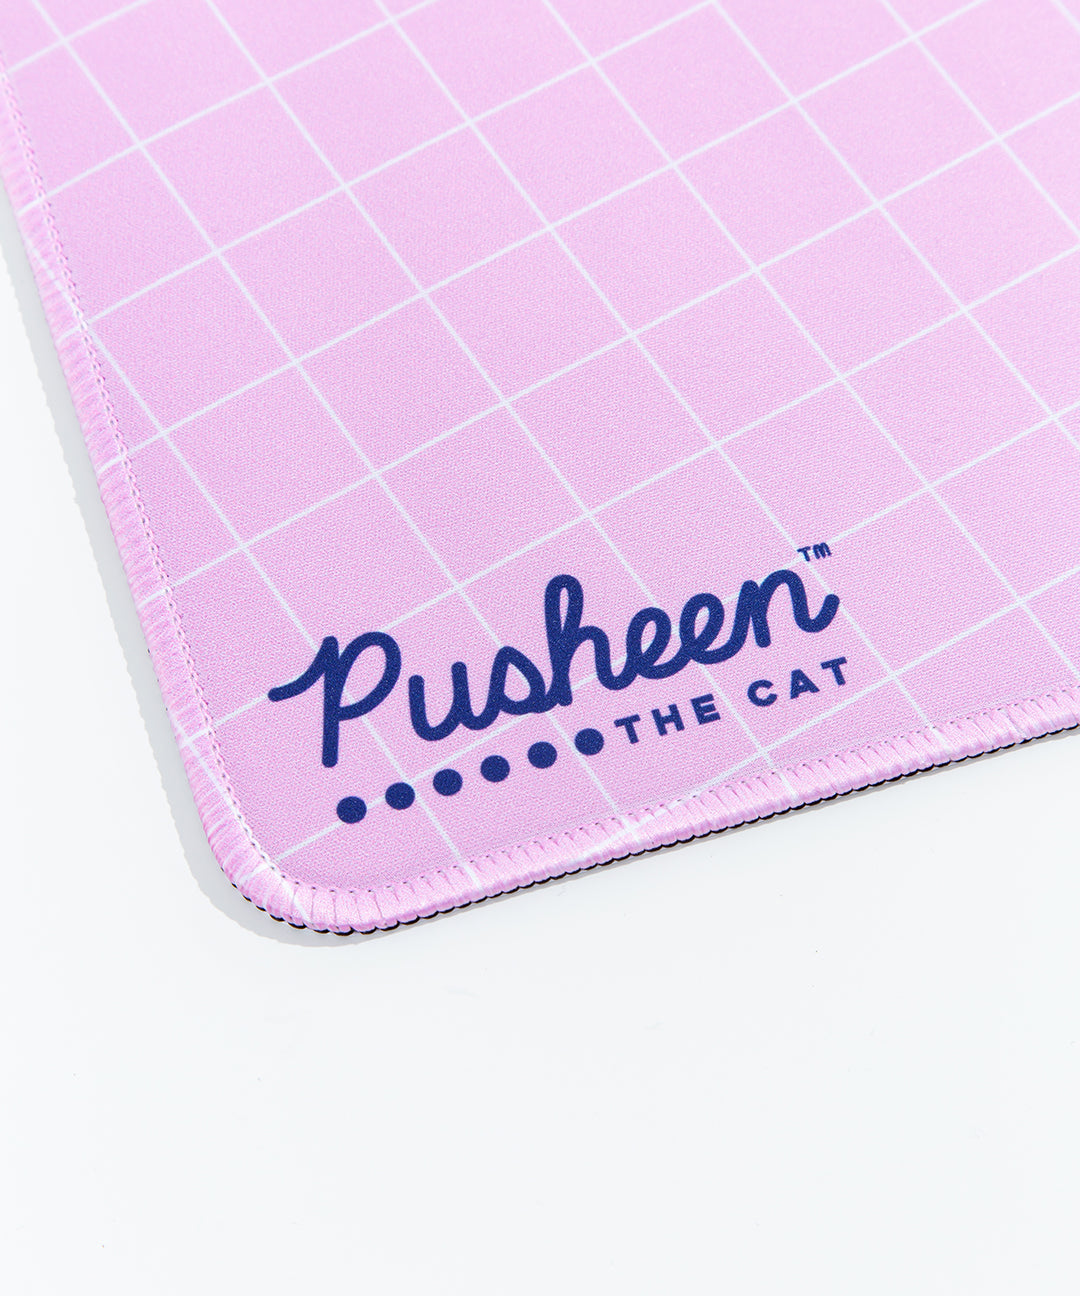 Pusheen Gaming Desk Mat – Pusheen Shop